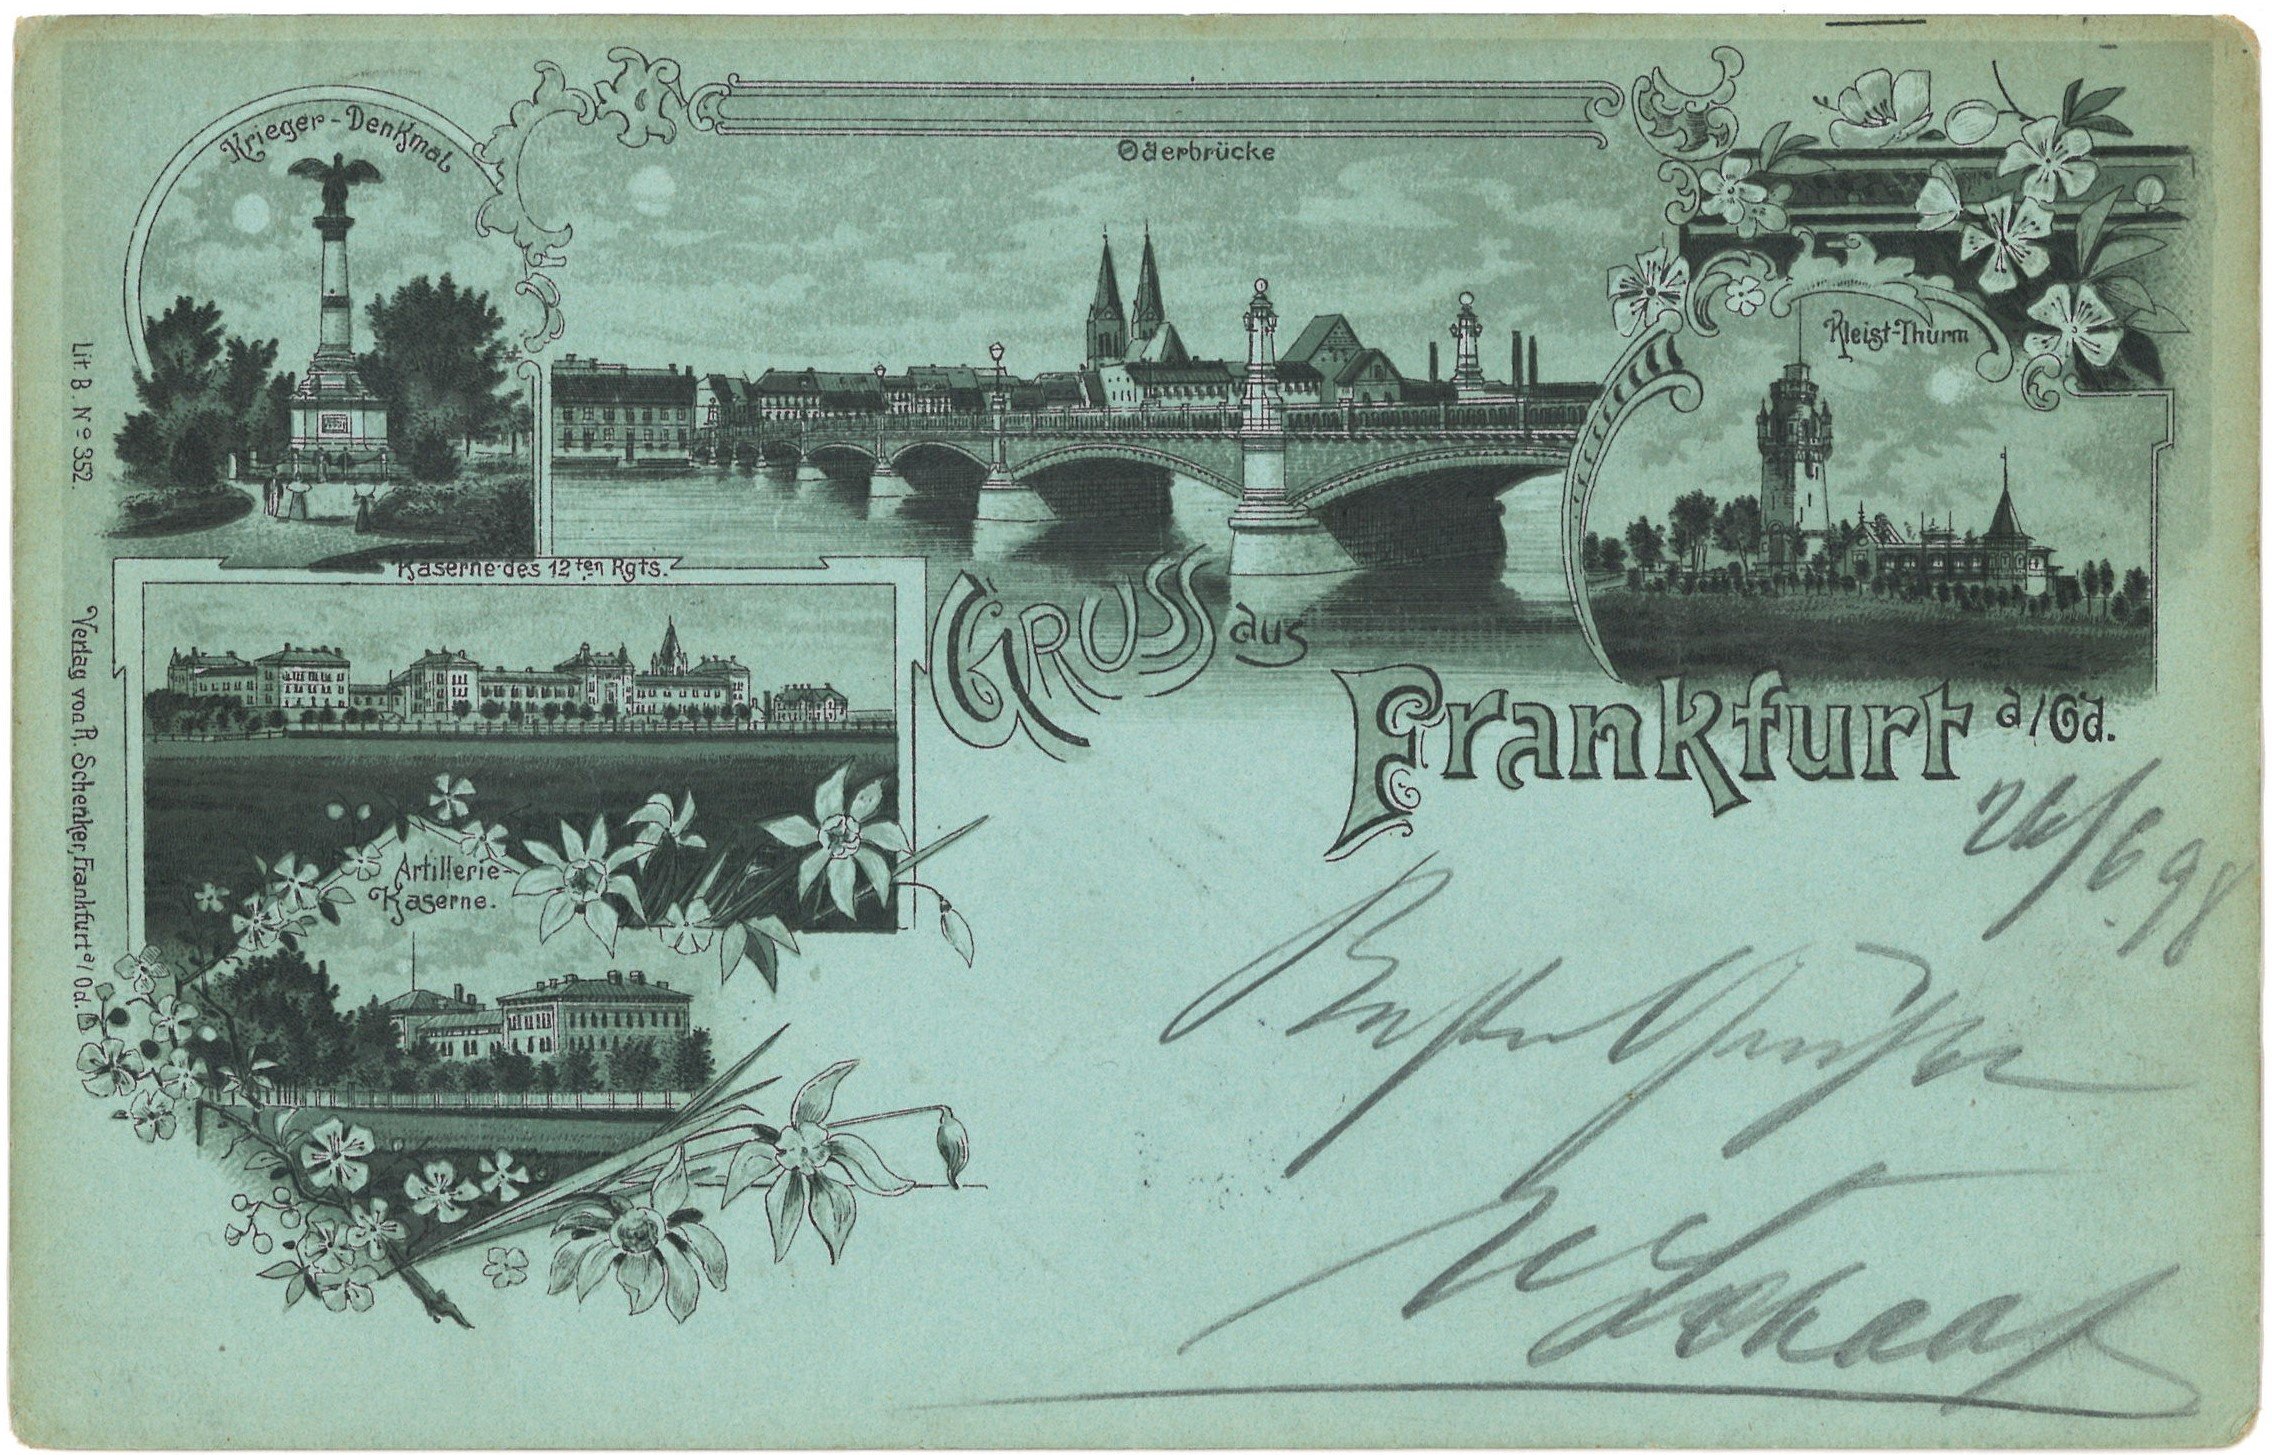 Frankfurt (Oder): Fünf Ansichten (Landesgeschichtliche Vereinigung für die Mark Brandenburg e.V., Archiv CC BY)